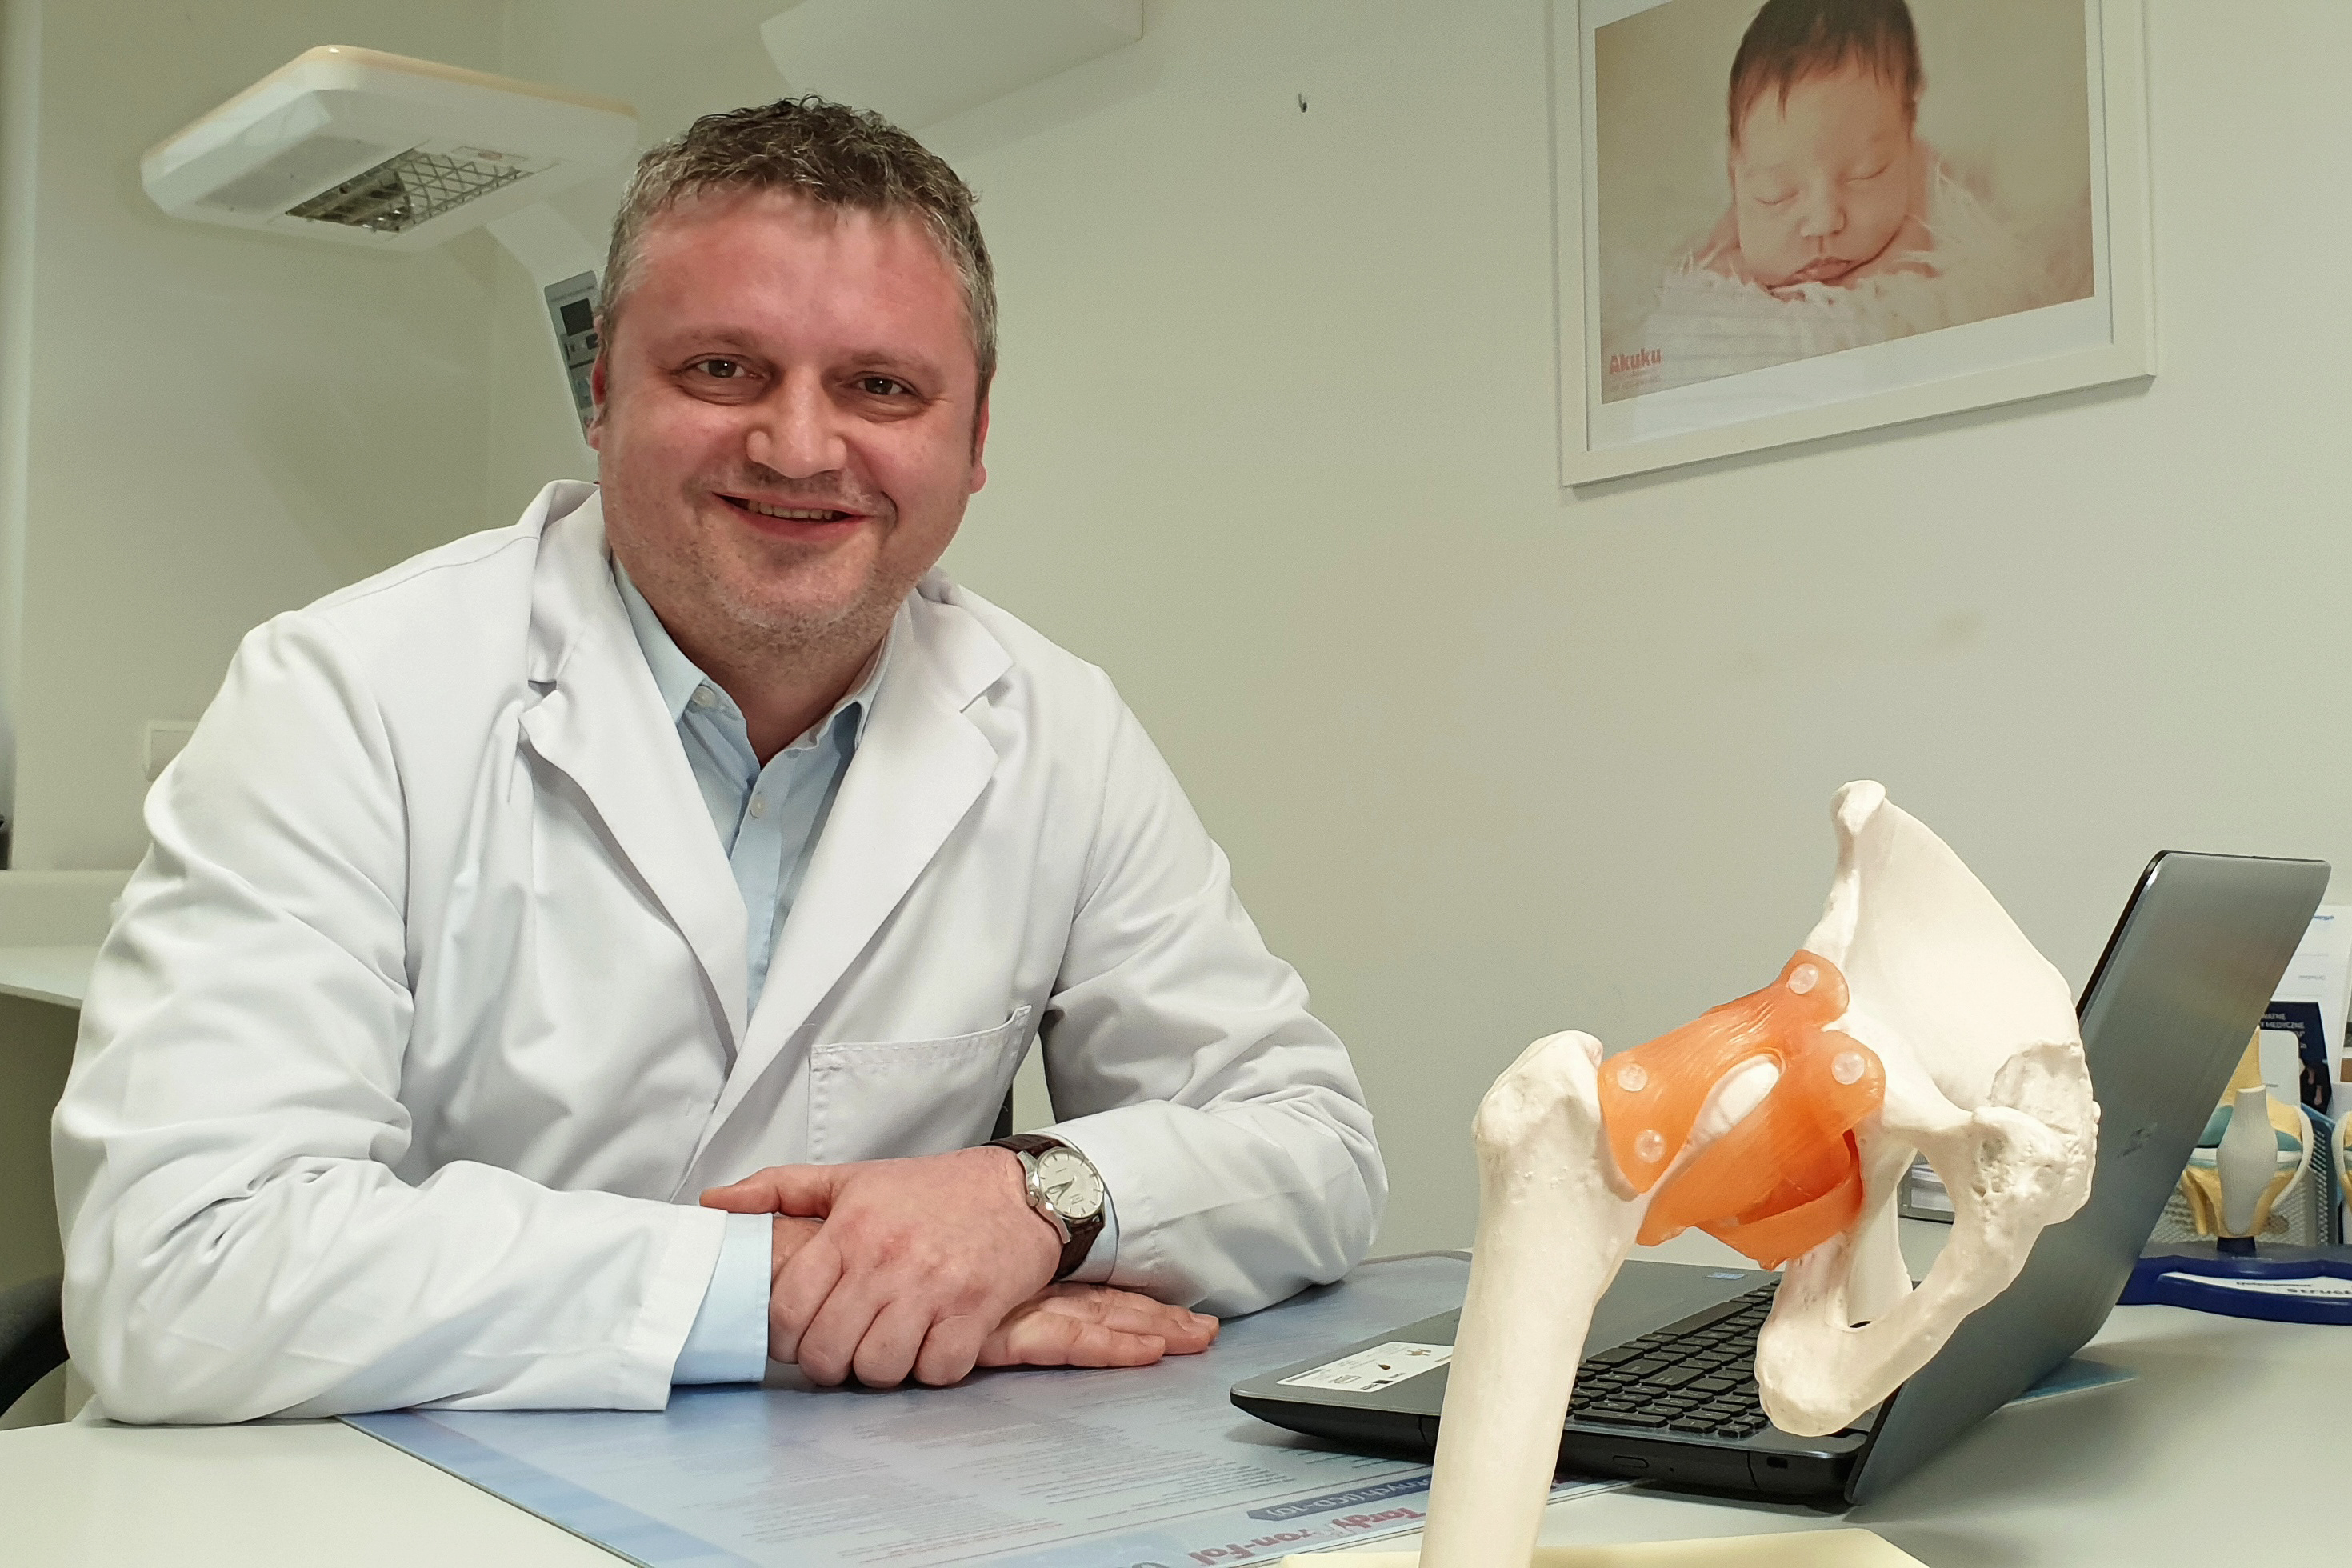 Tomasz Grudniewski w naszym mieście prowadzi praktykę lekarską, specjalizuje się w ortopedii i traumatologii narządów ruchu, fot. Marcin Mielewski